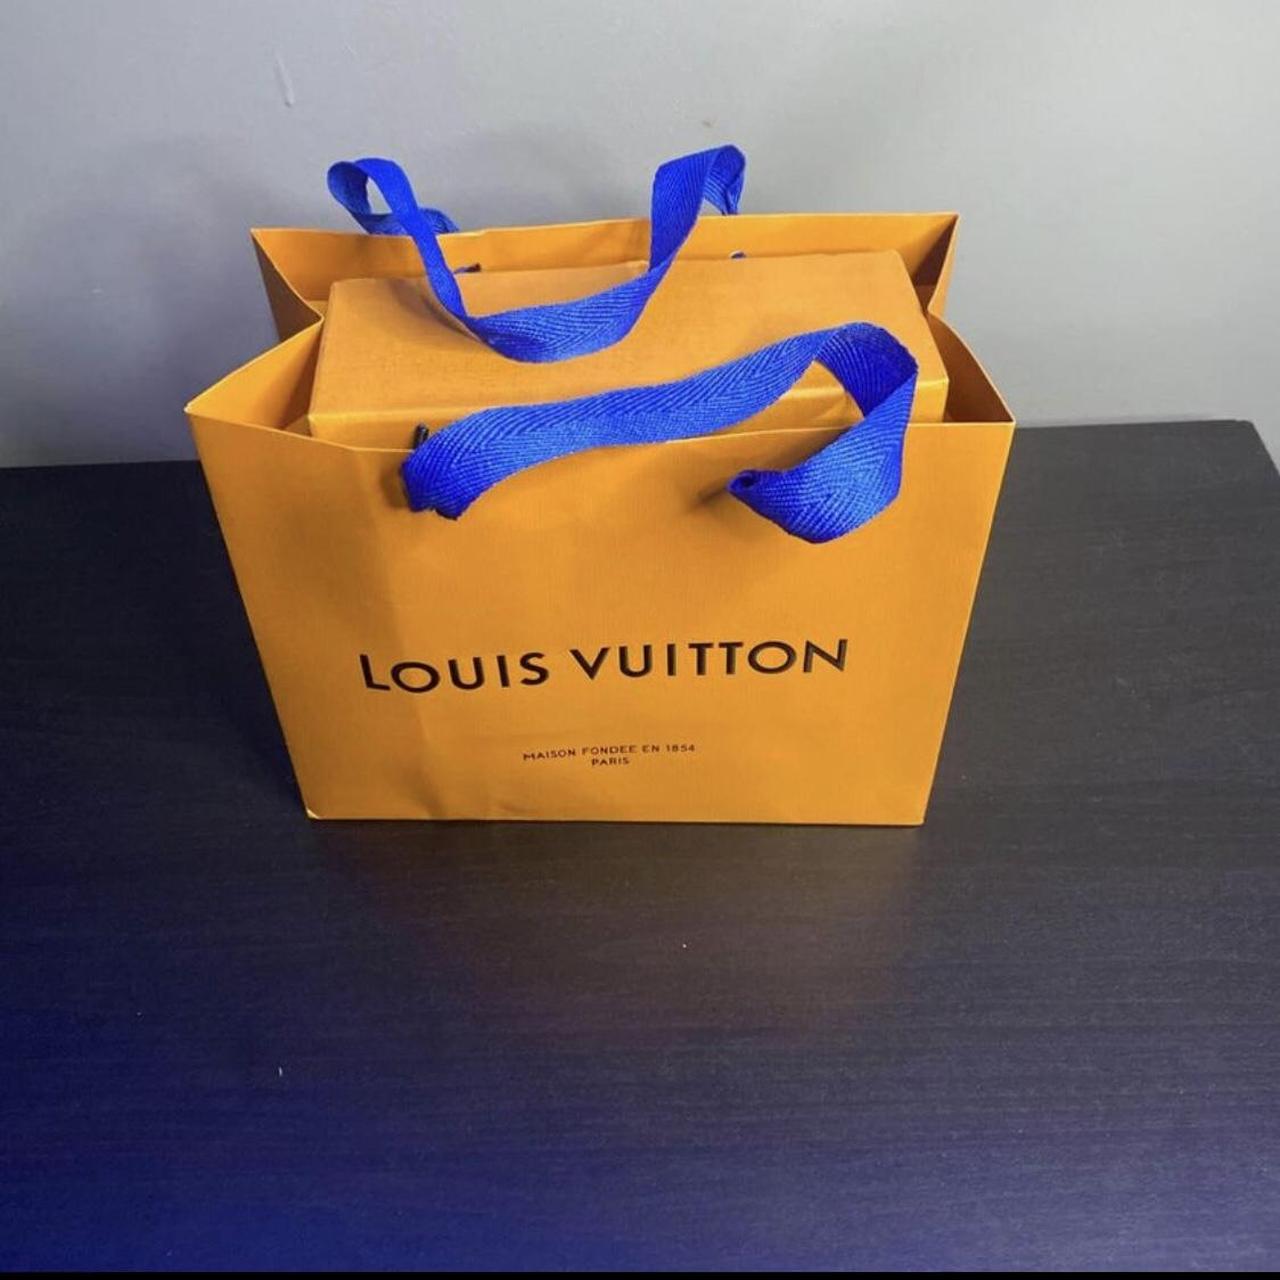 Authentic LOUIS VUITTON Shopping Paper Bag - Depop